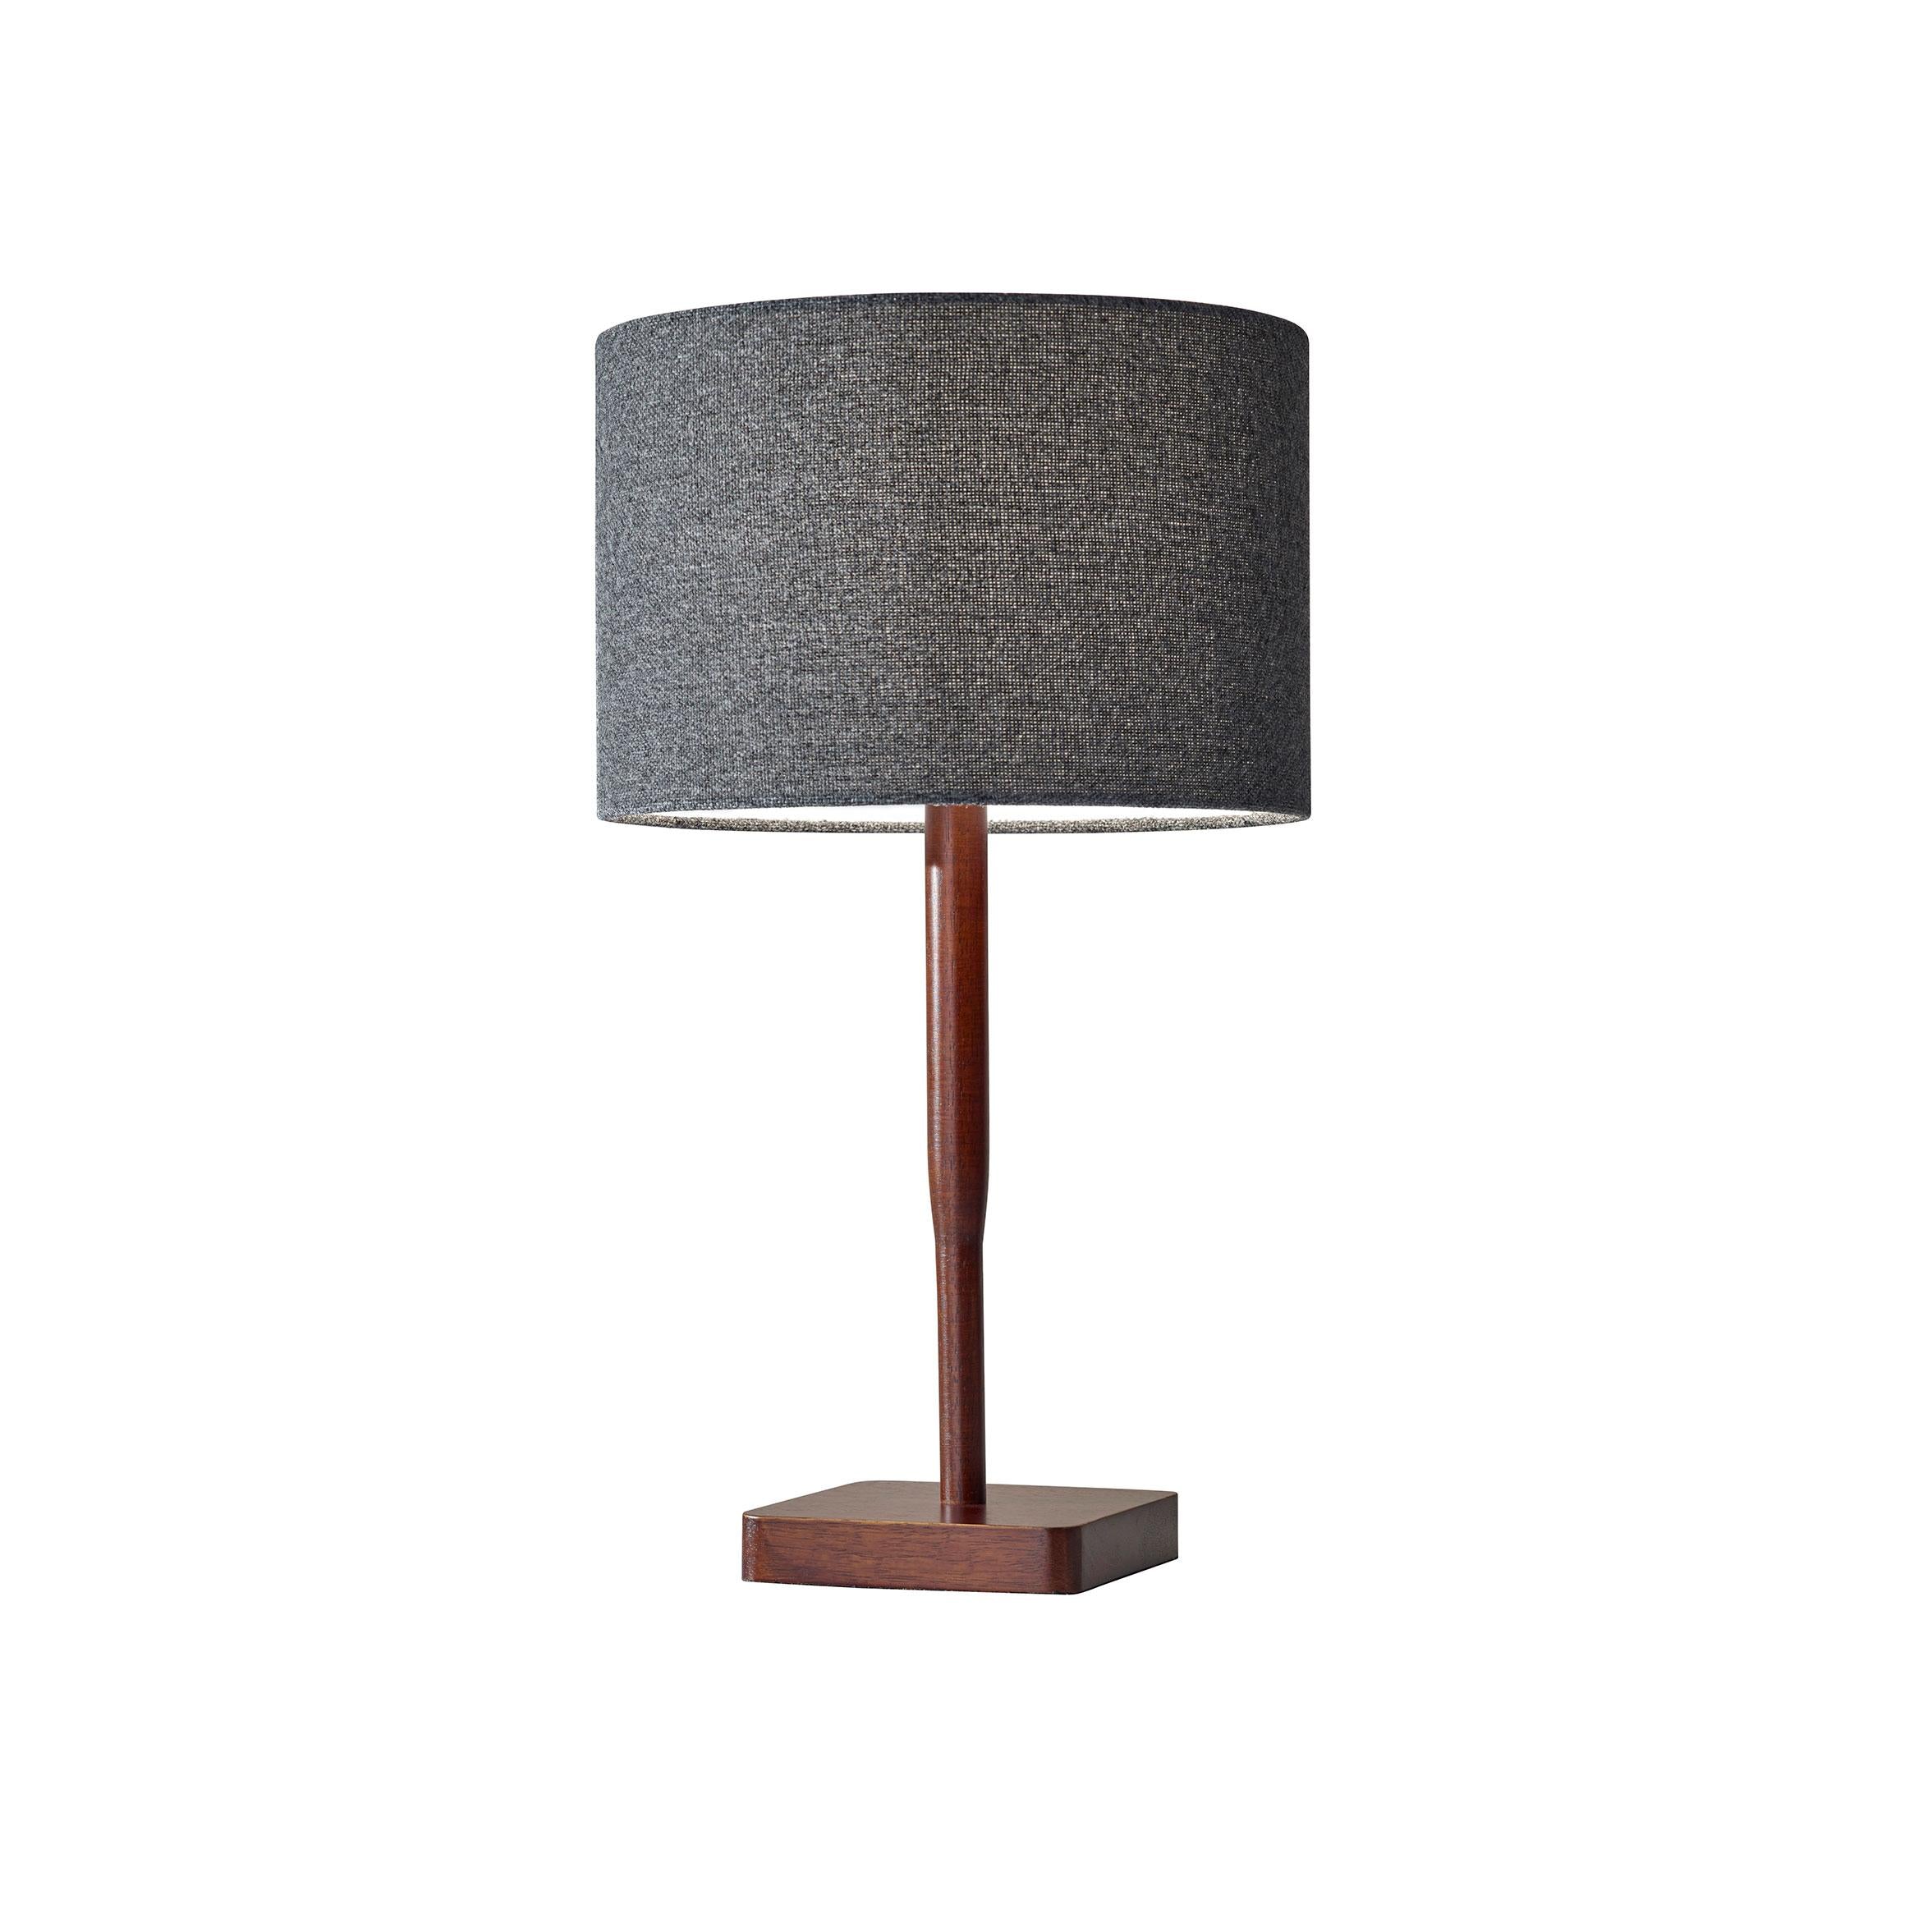 ELLIS Lampe sur table Bois - 4092-15 | ADESSO